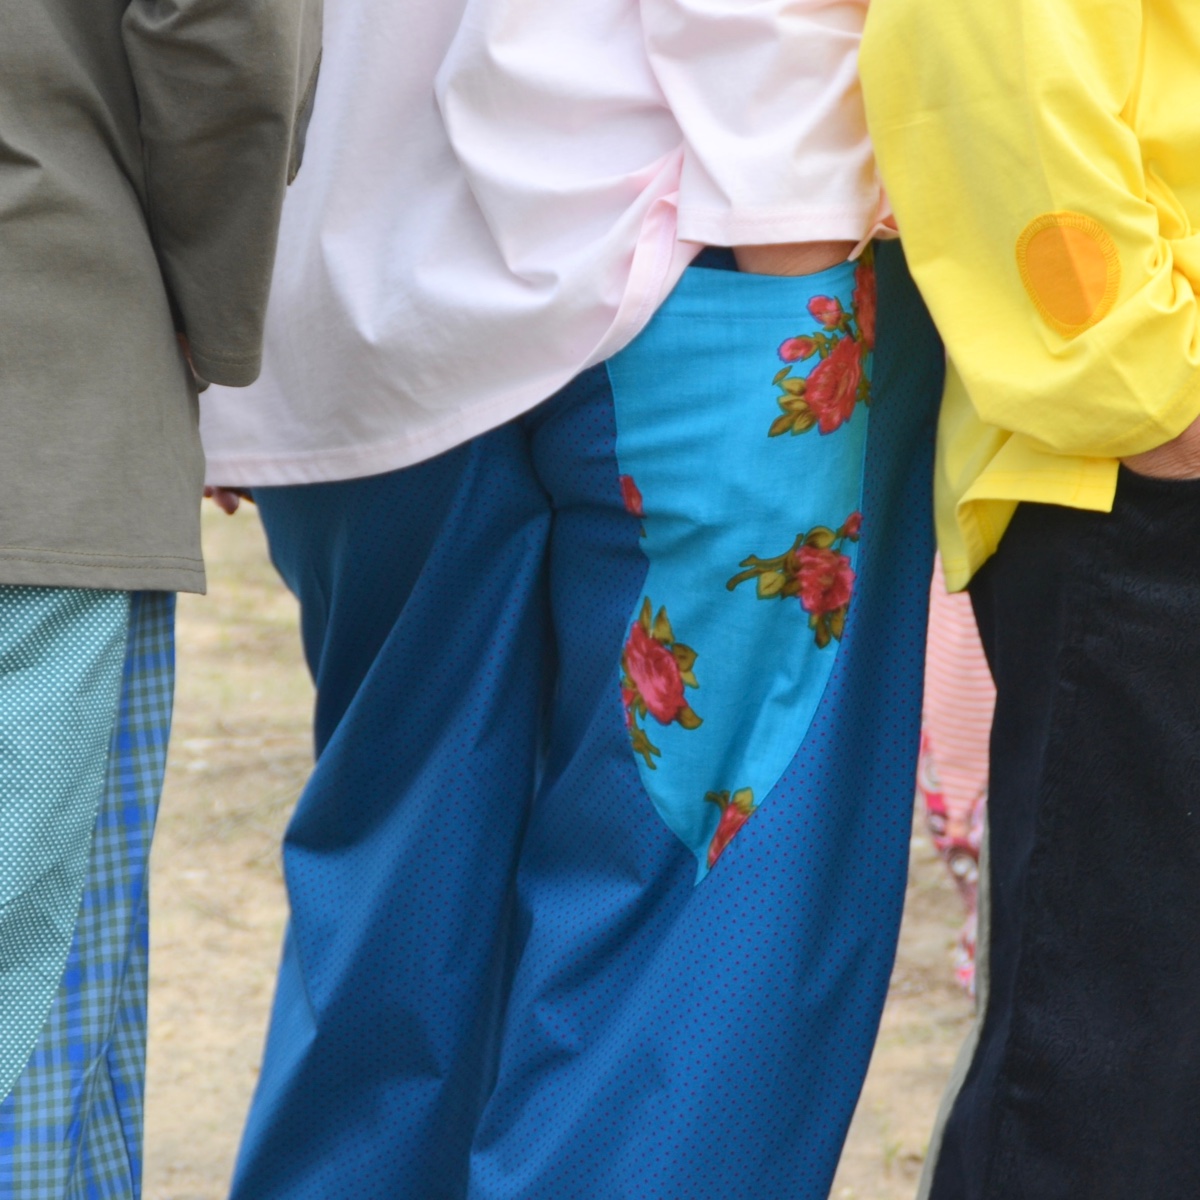 מכנסיים כפולים מדגם נור בצבע טורקיז עם נקודות קטנות בצבע פוקסיה